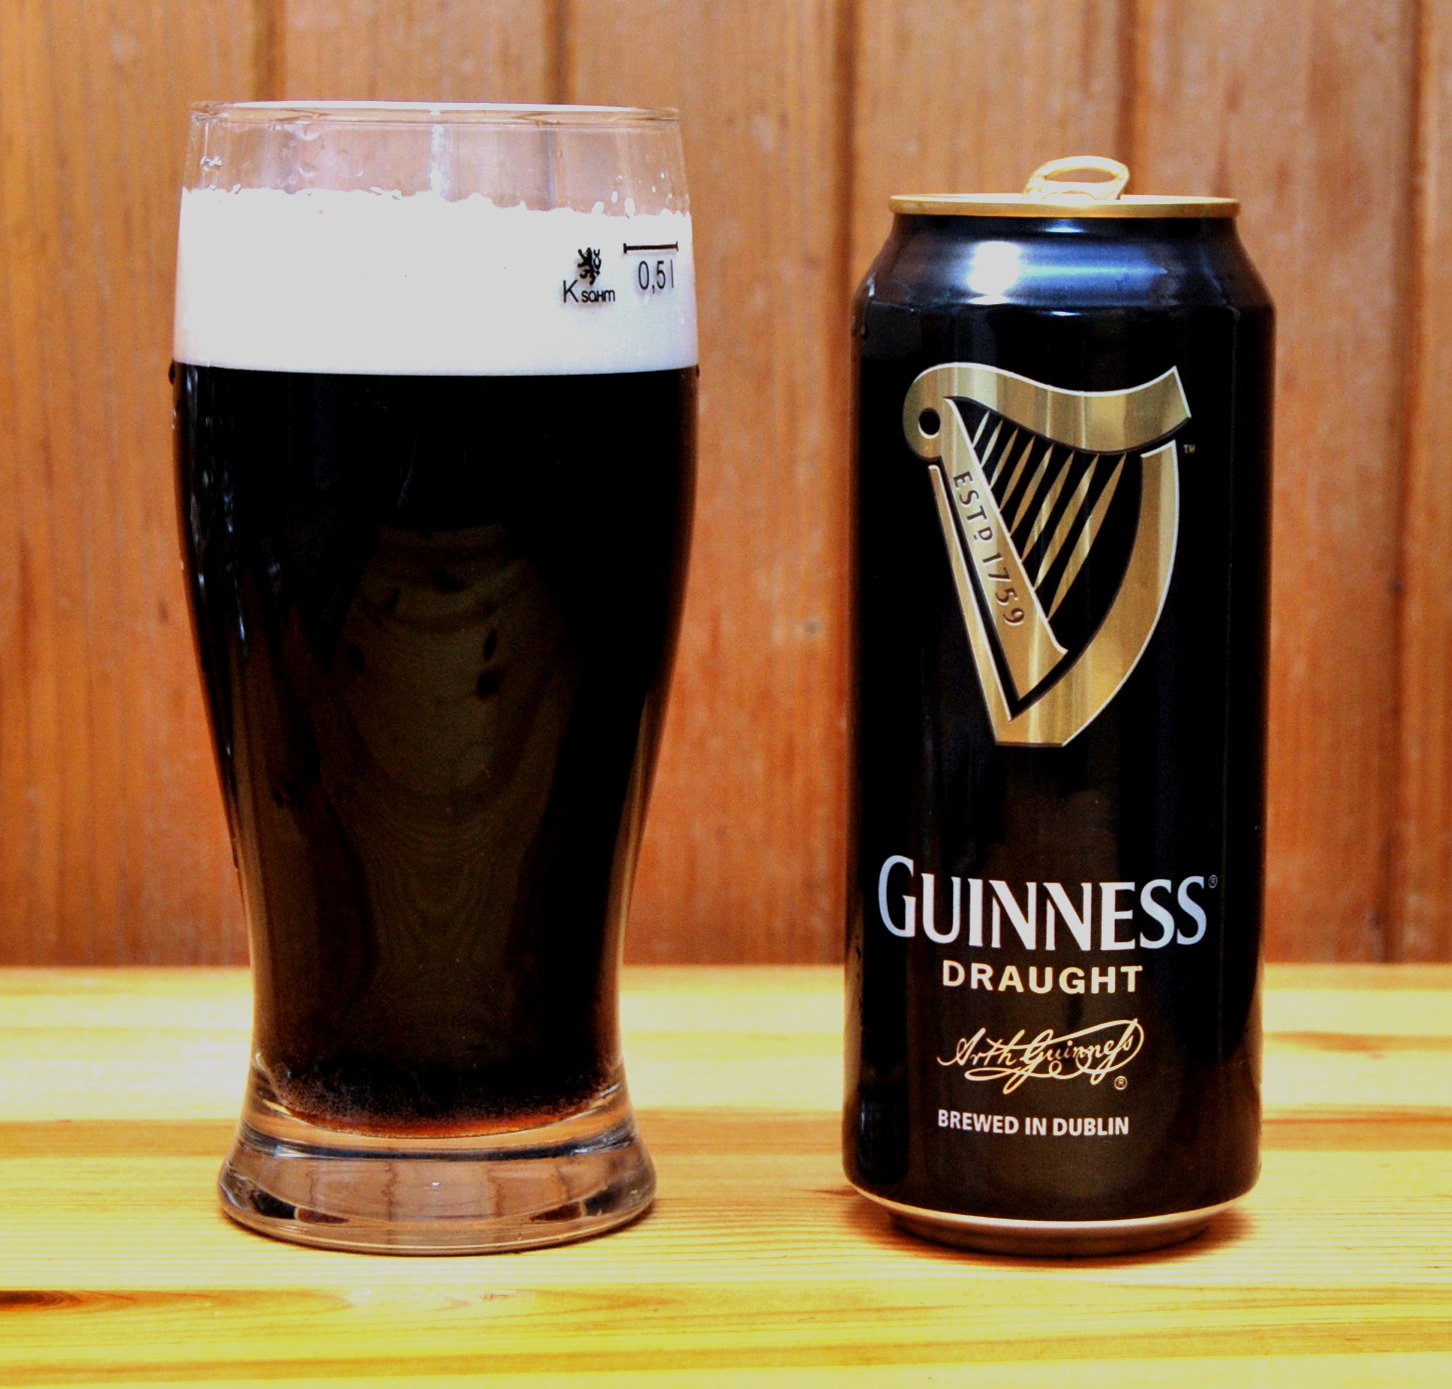 Guinness Draught Dosyć przeciętny ten stout. 